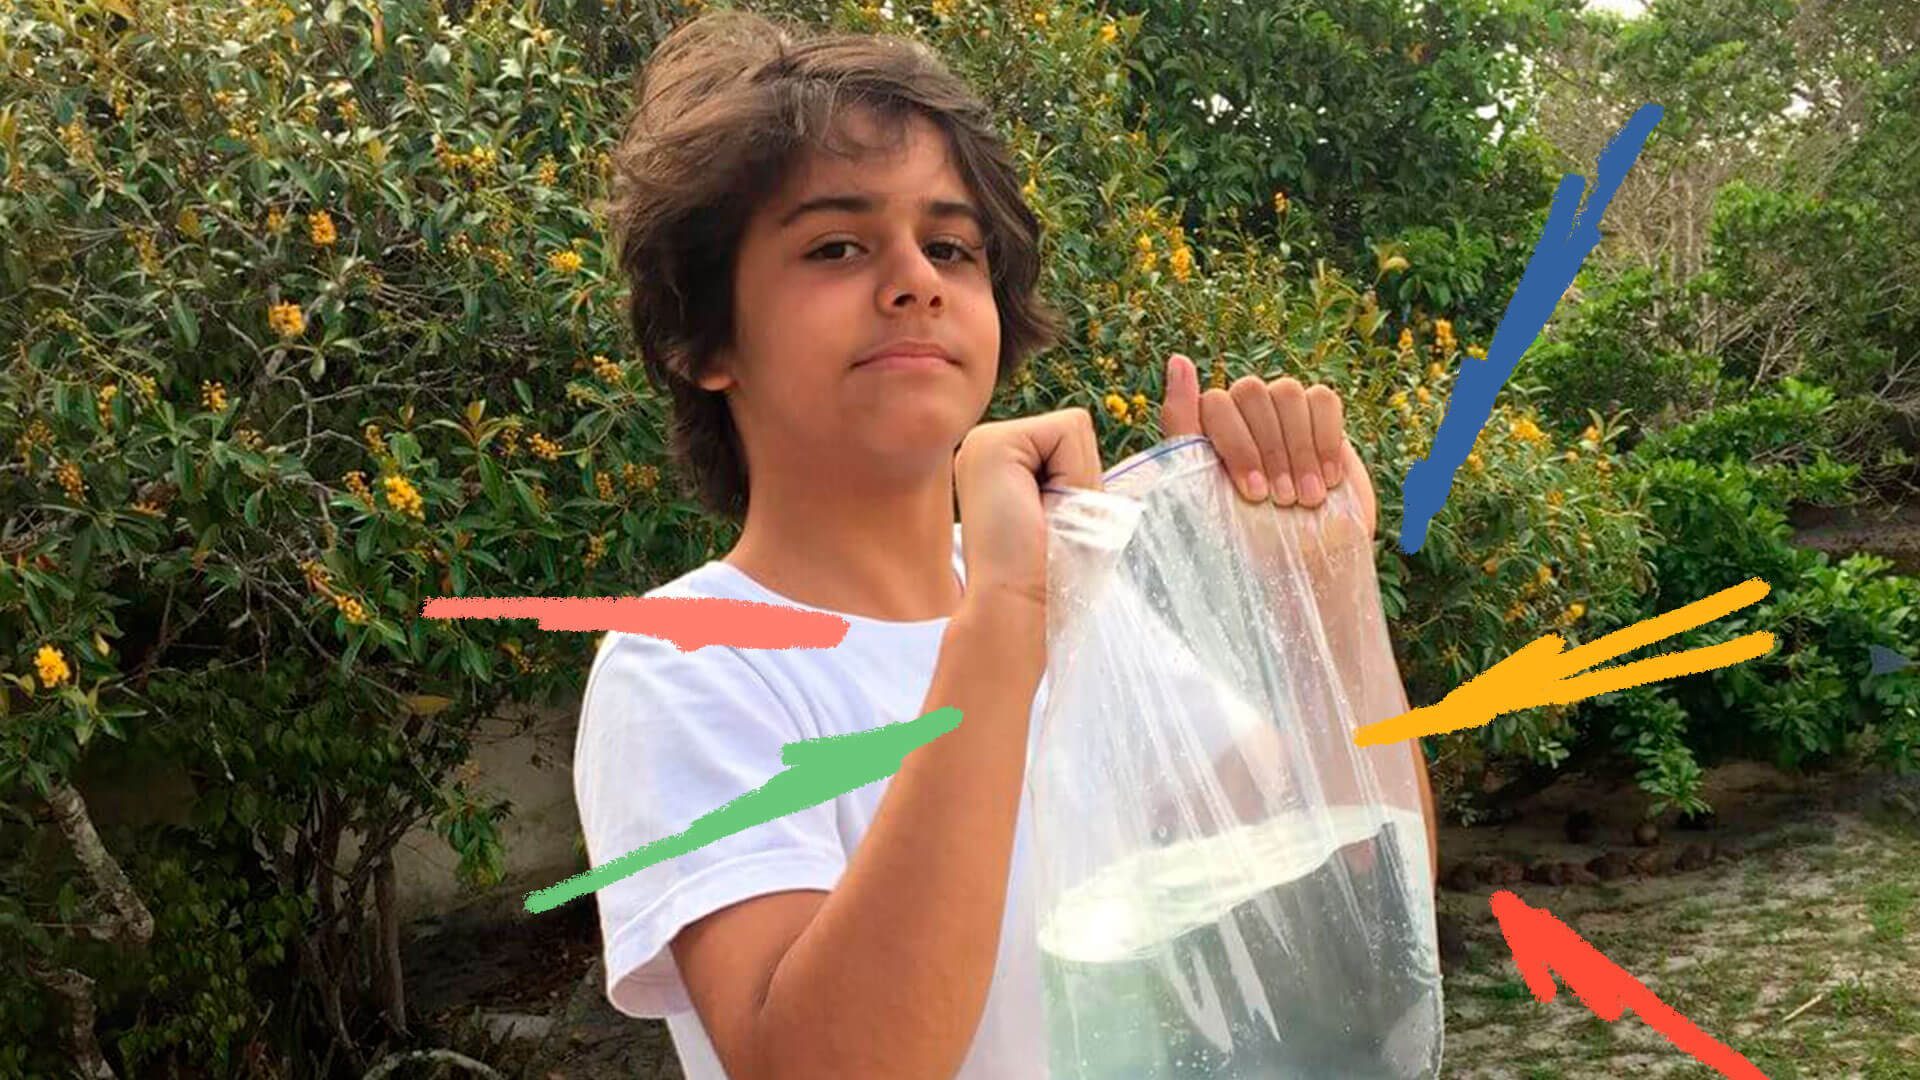 Um menino segurando um saco plástico transparente cheio de água dentro